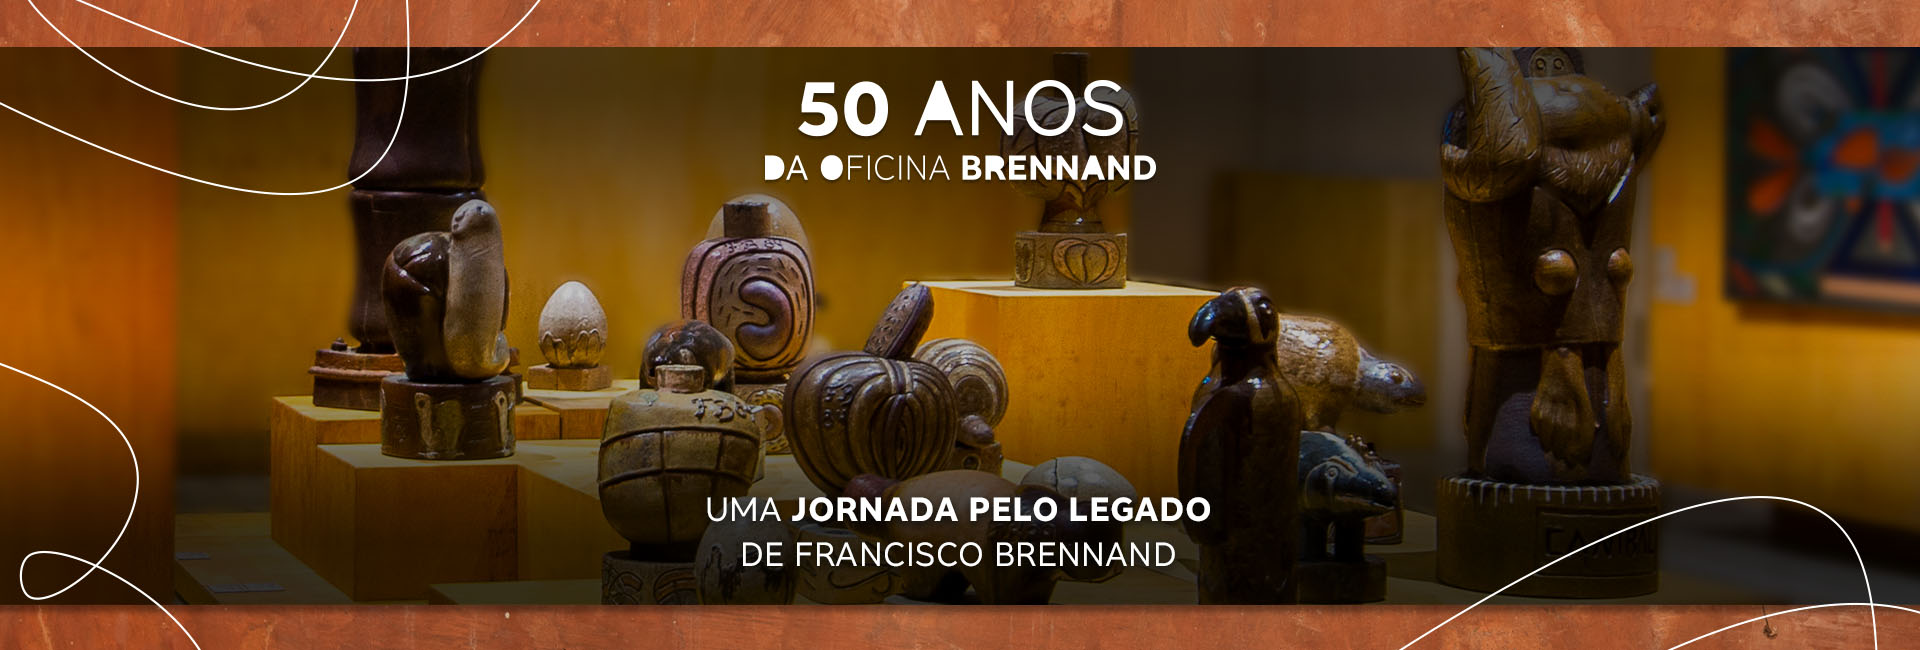 50 anos da Oficina Brennand